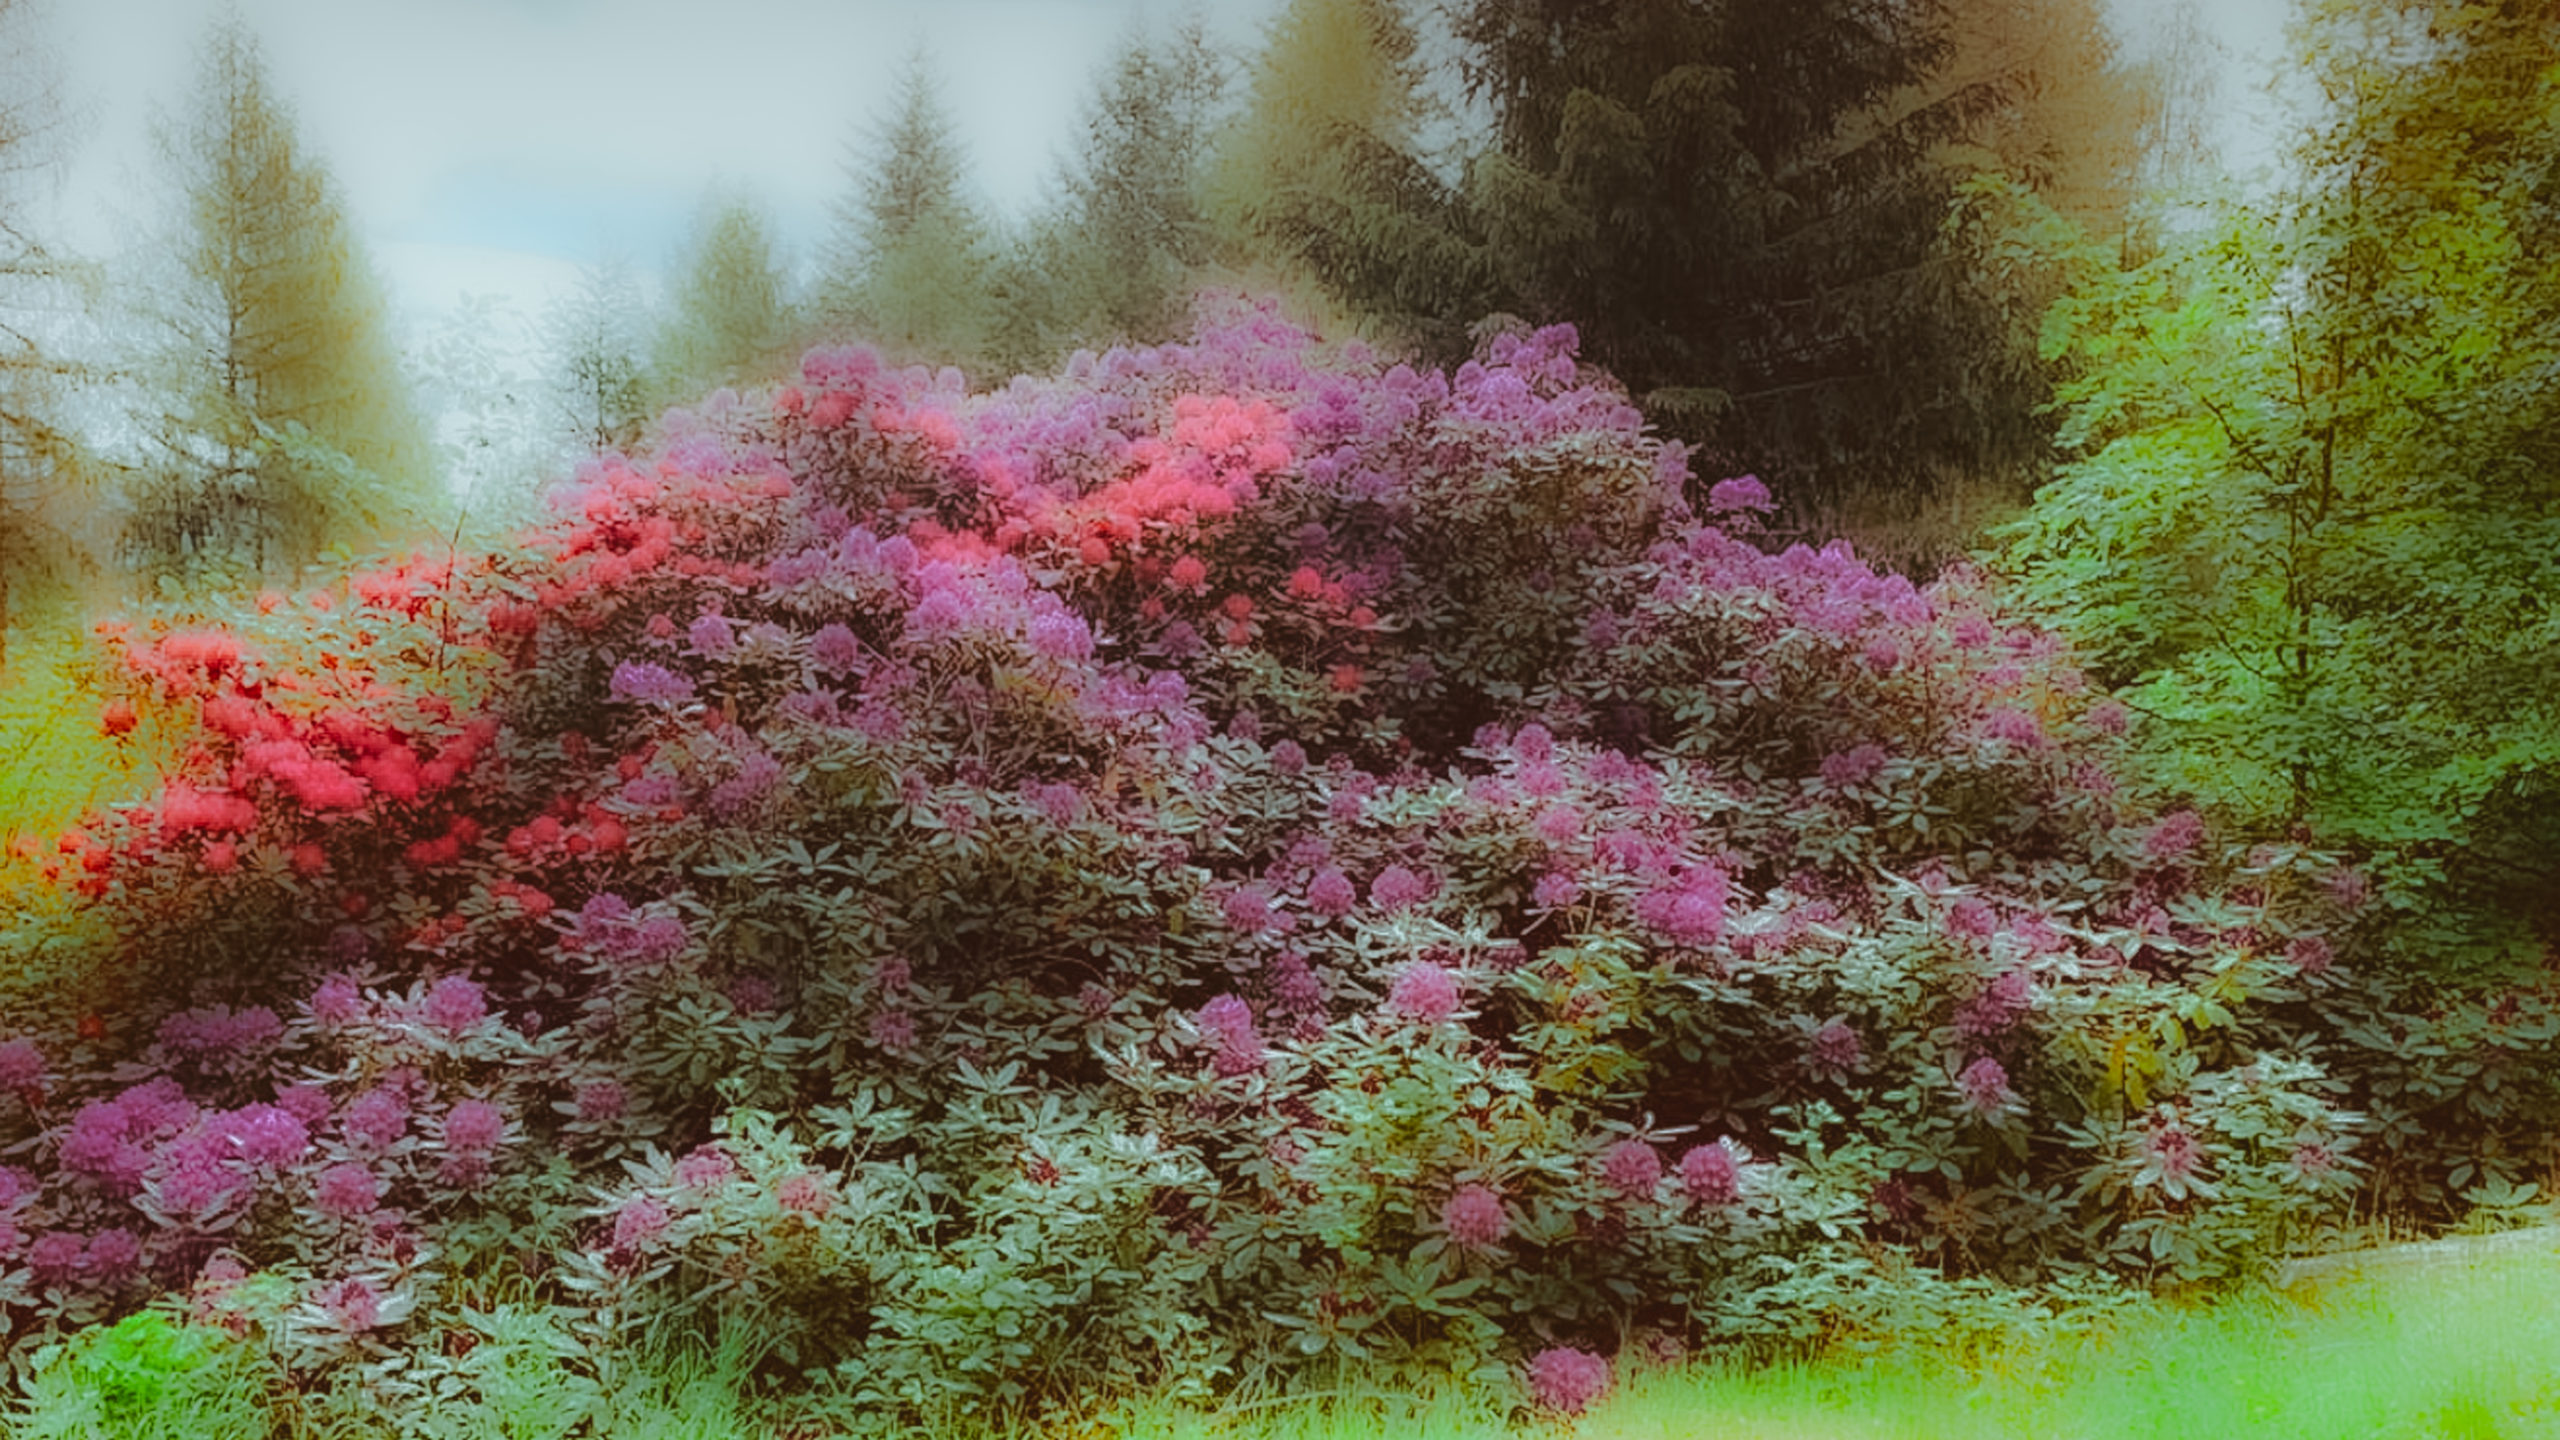 Grenzweg Gerstunger Forst, Rhododendron-Pflanze am Erbbegräbnis